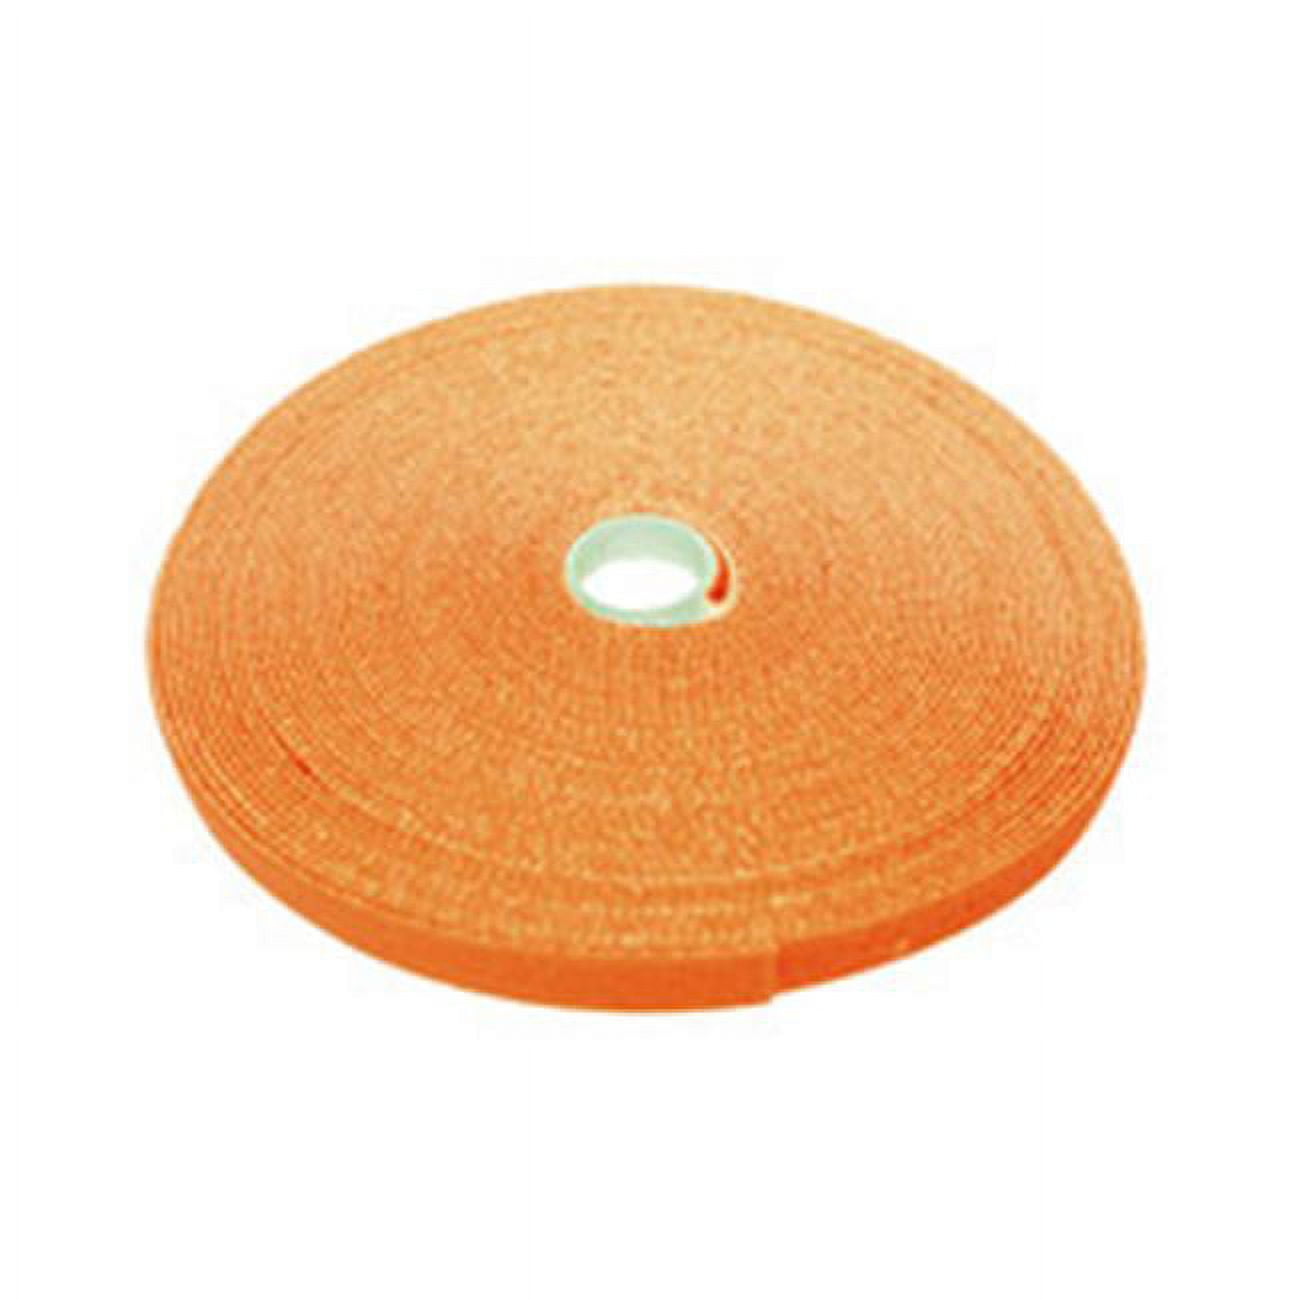 Cablewholesale 30ct-03150 0.75 In. X 50 Ft. Roll Hook & Loop Tape - Orange